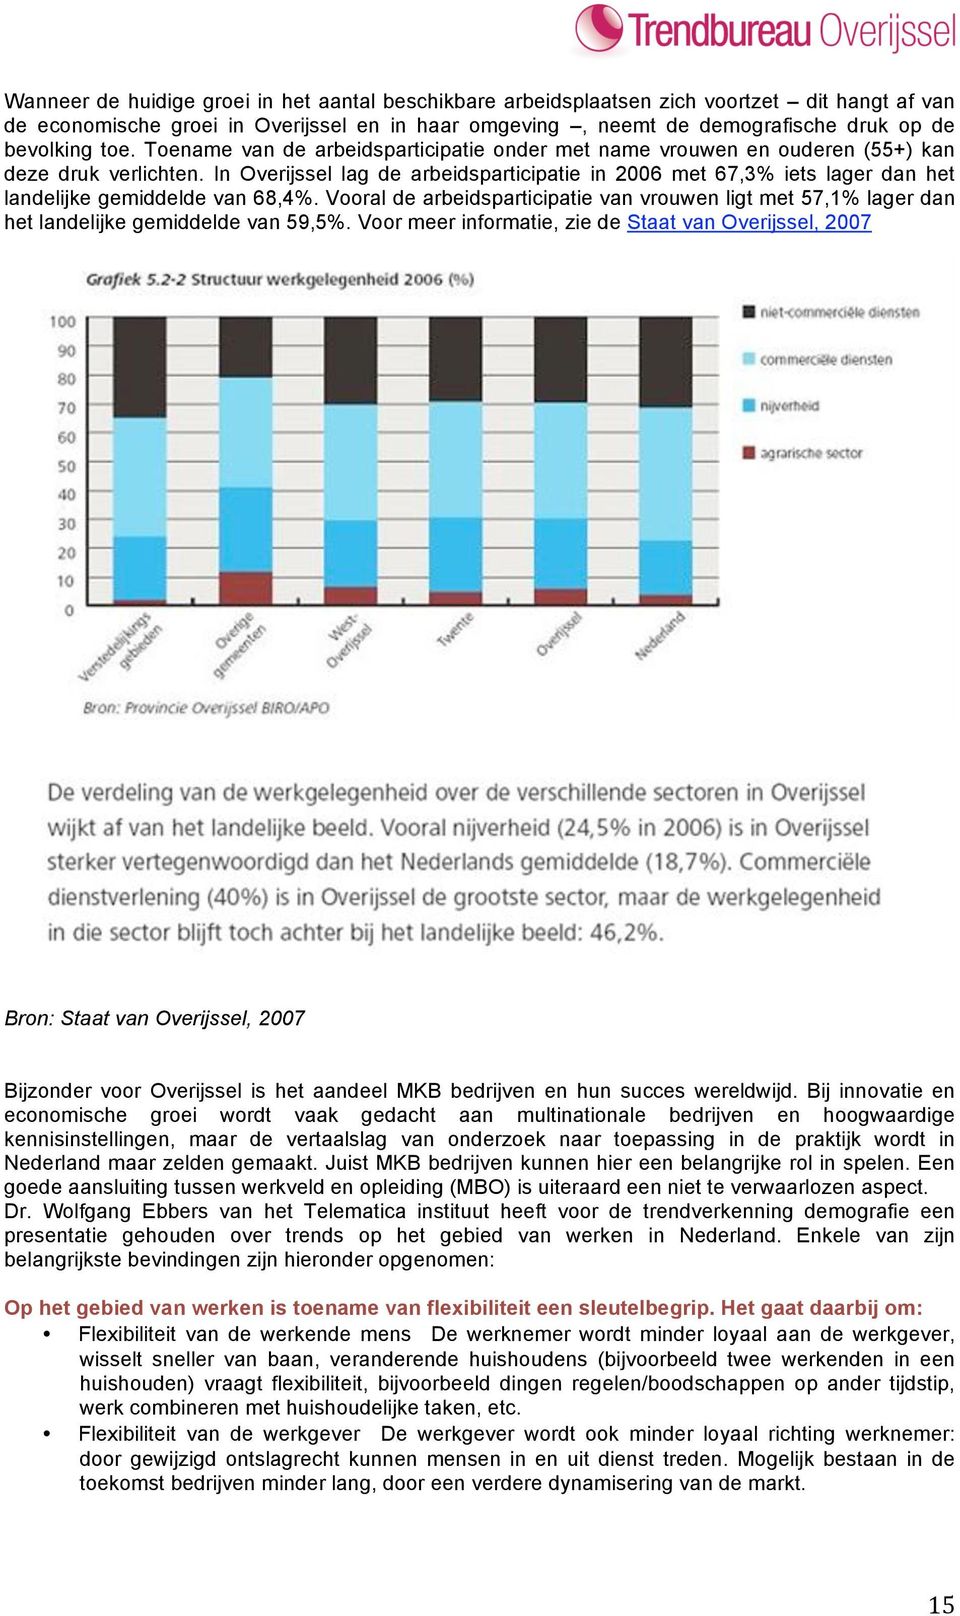 In Overijssel lag de arbeidsparticipatie in 2006 met 67,3% iets lager dan het landelijke gemiddelde van 68,4%.